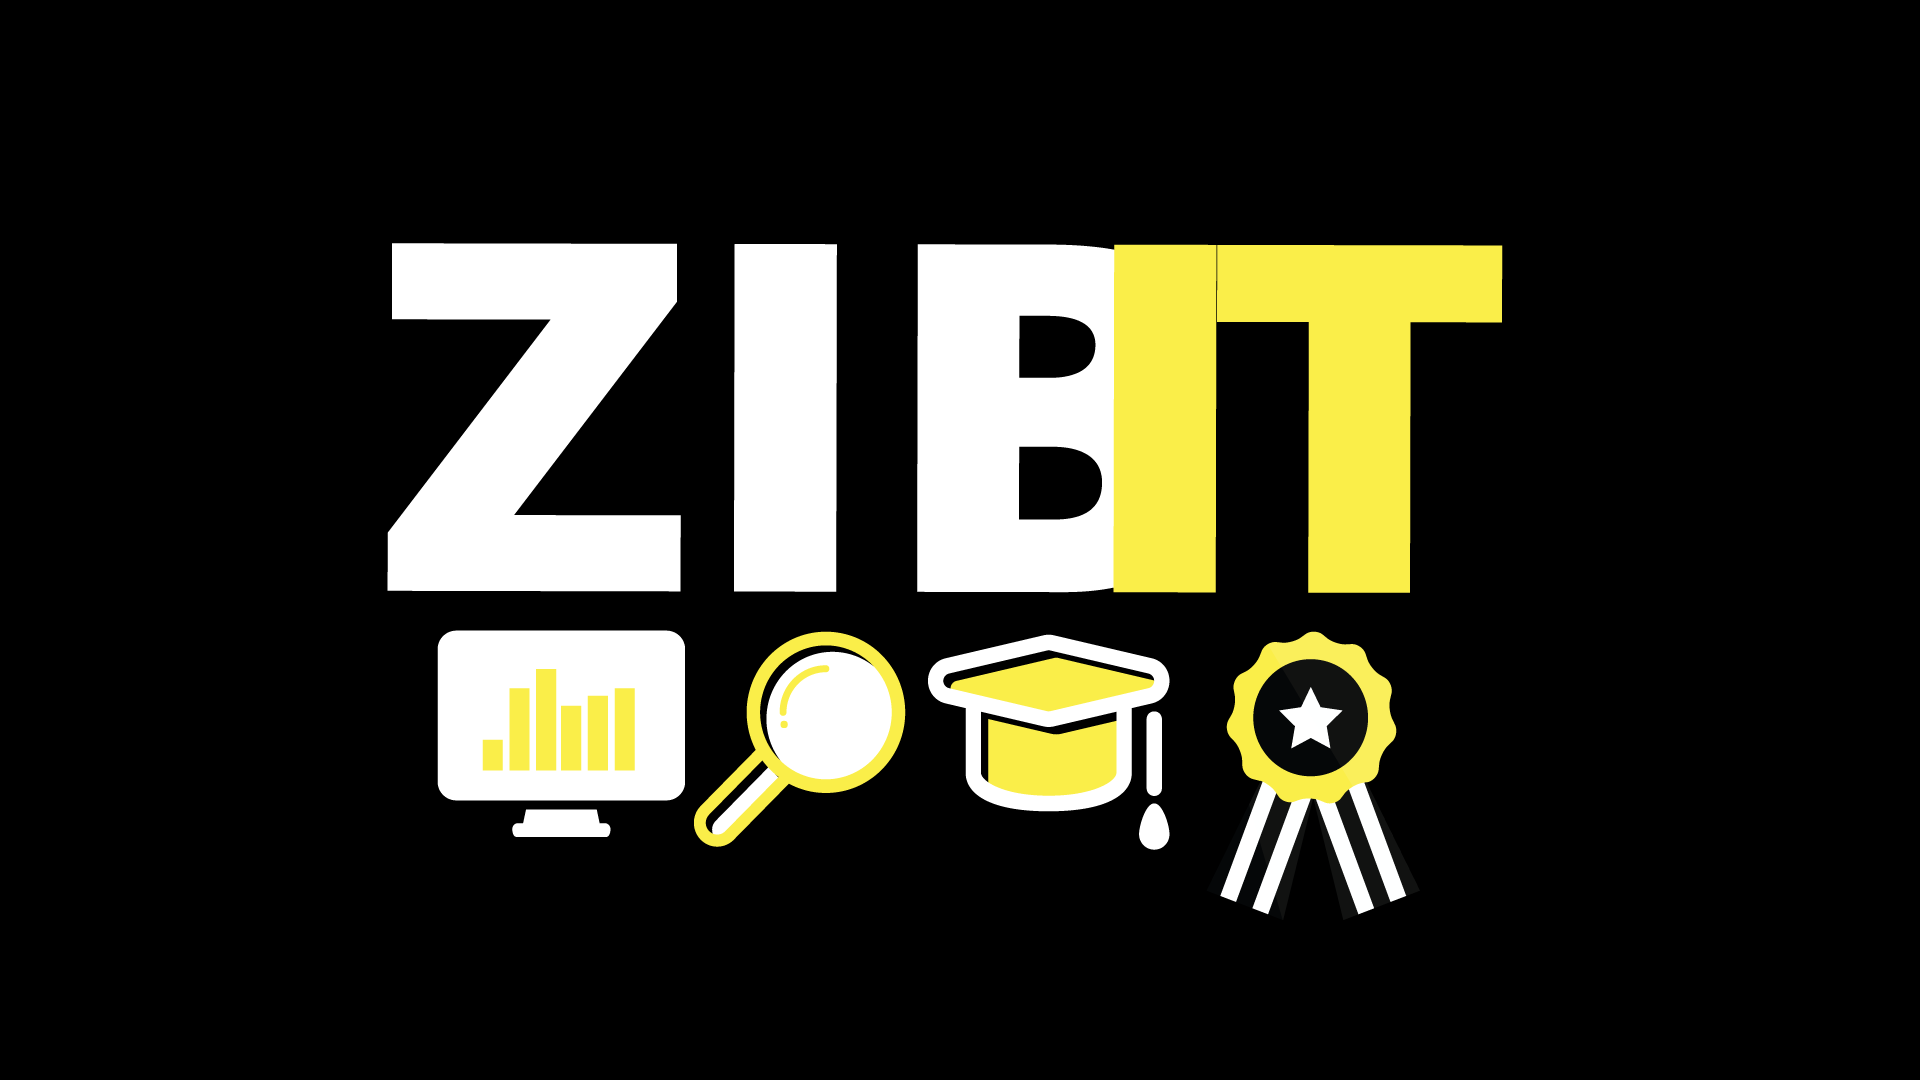 Noslēgumu darbu stipendiju konkurss "ZIBIT 2018"